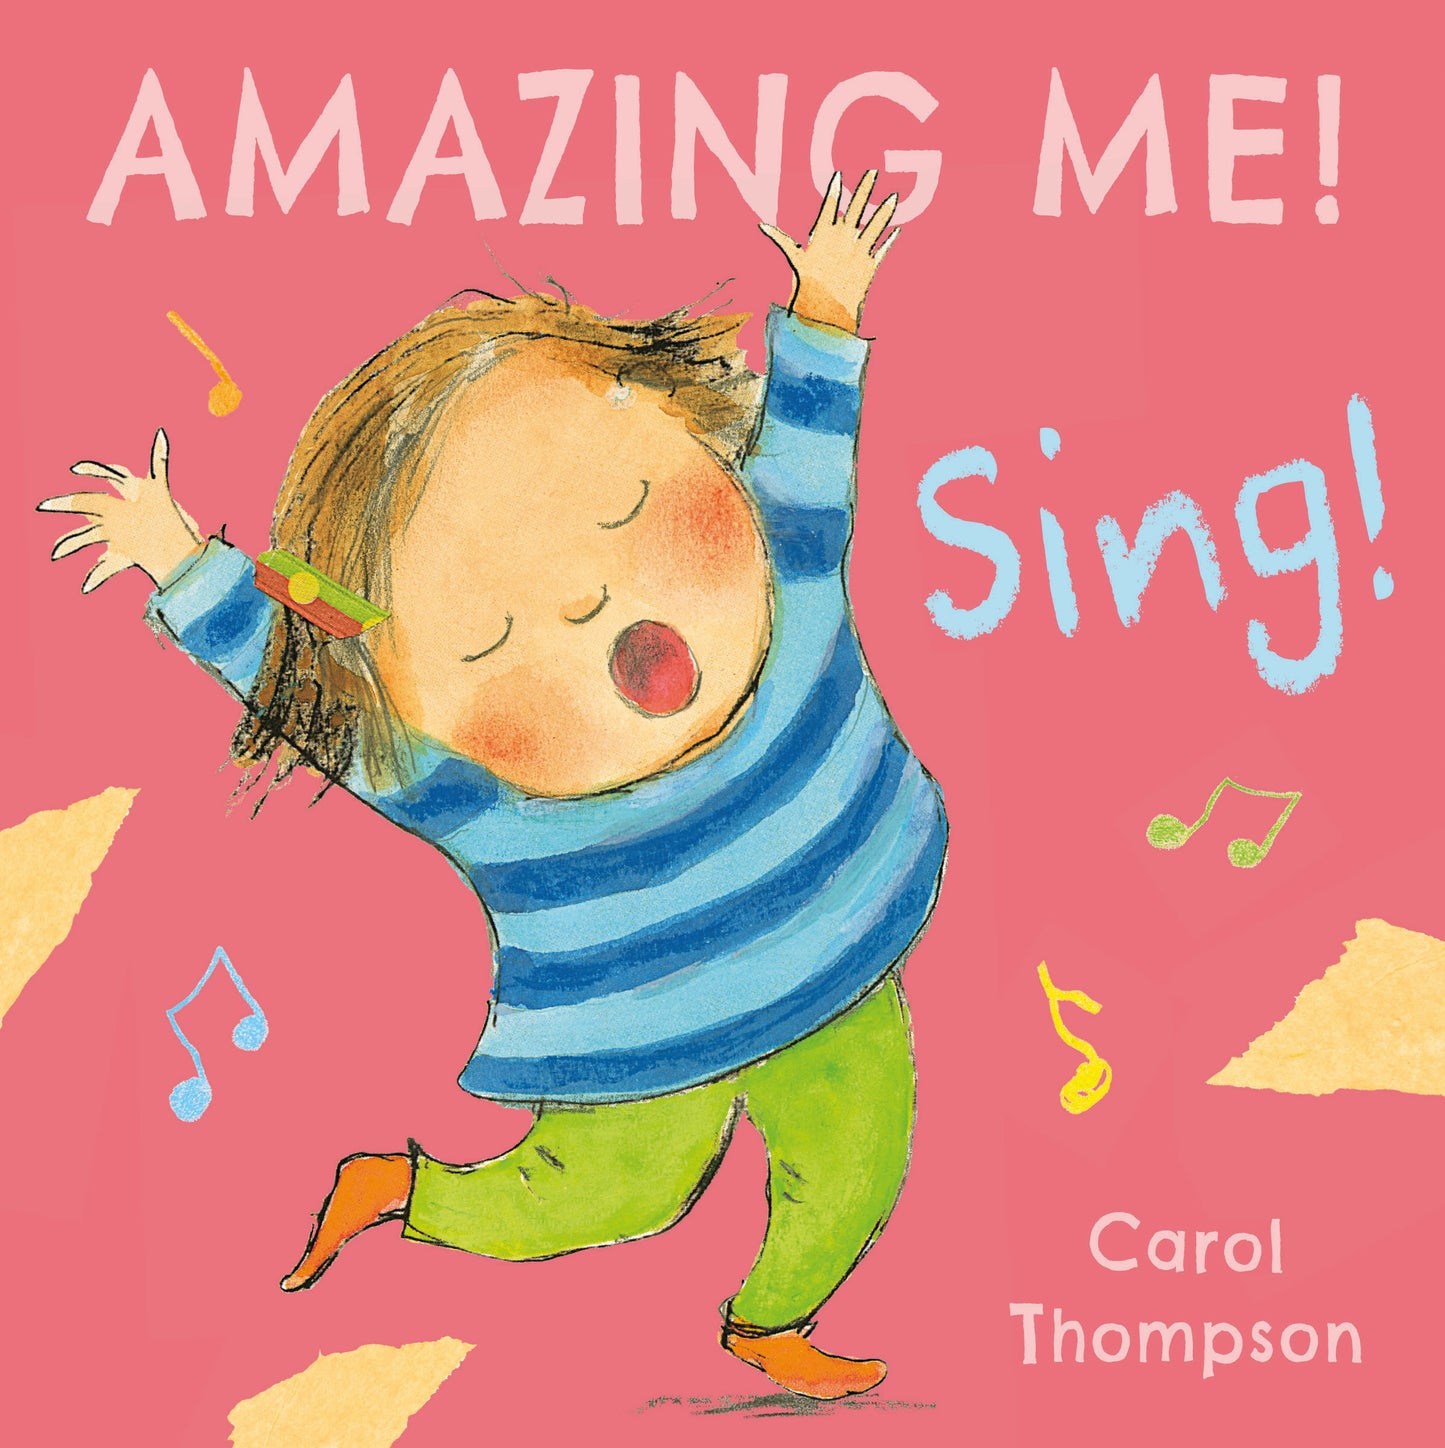 Amazing Me! Sing!